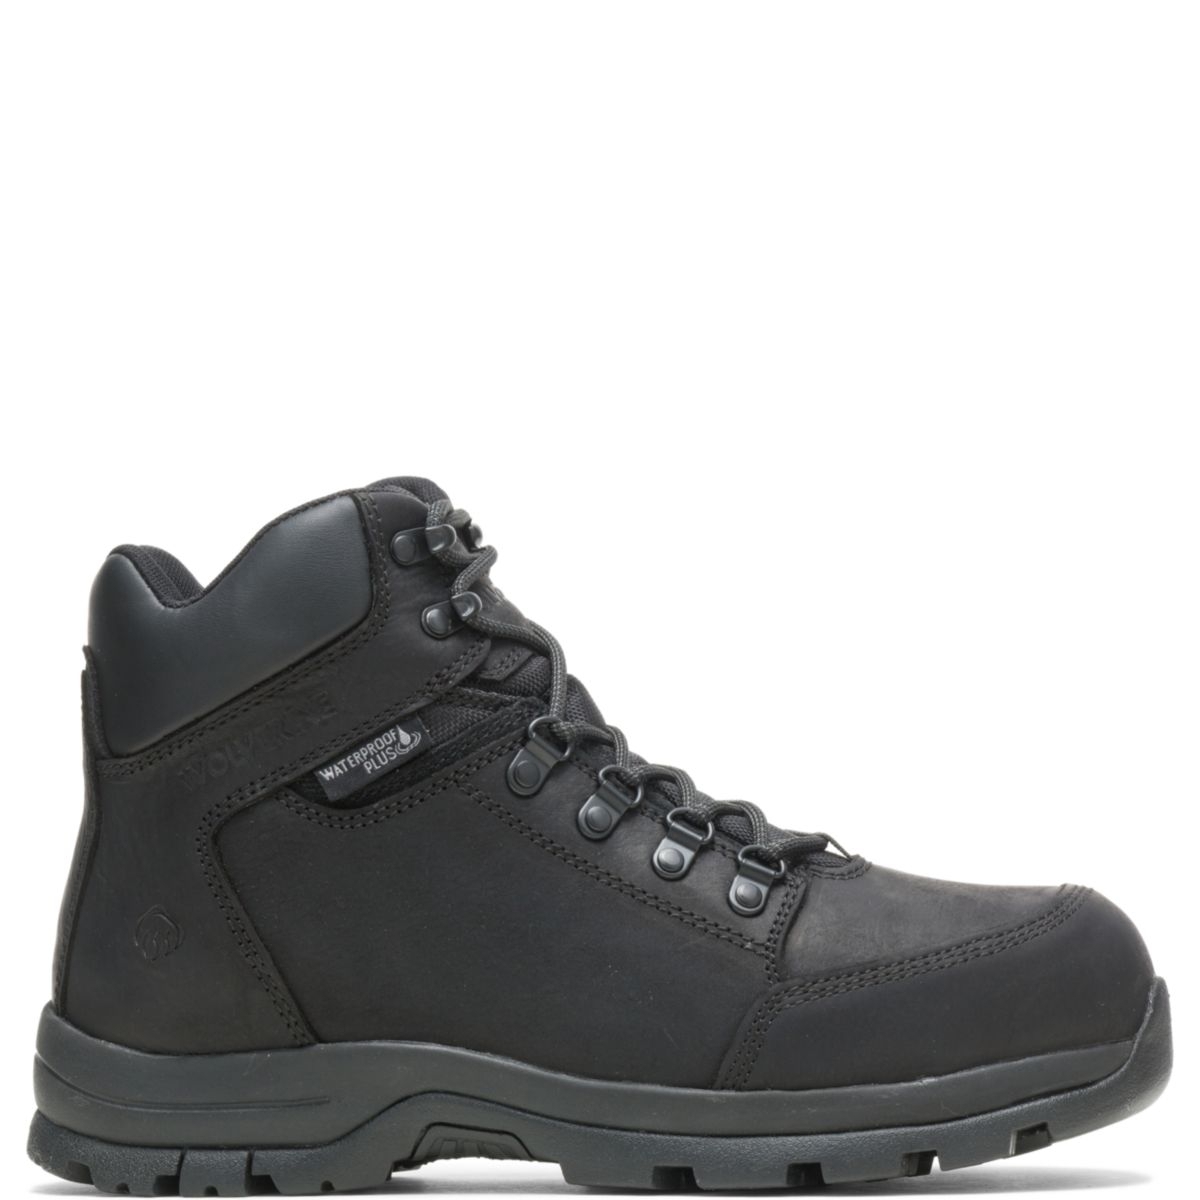 WOLVERINE Men's Grayson Steel Toe Waterproof Work Boot Black - W211042 BLACK - BLACK, 7.5 X-Wide